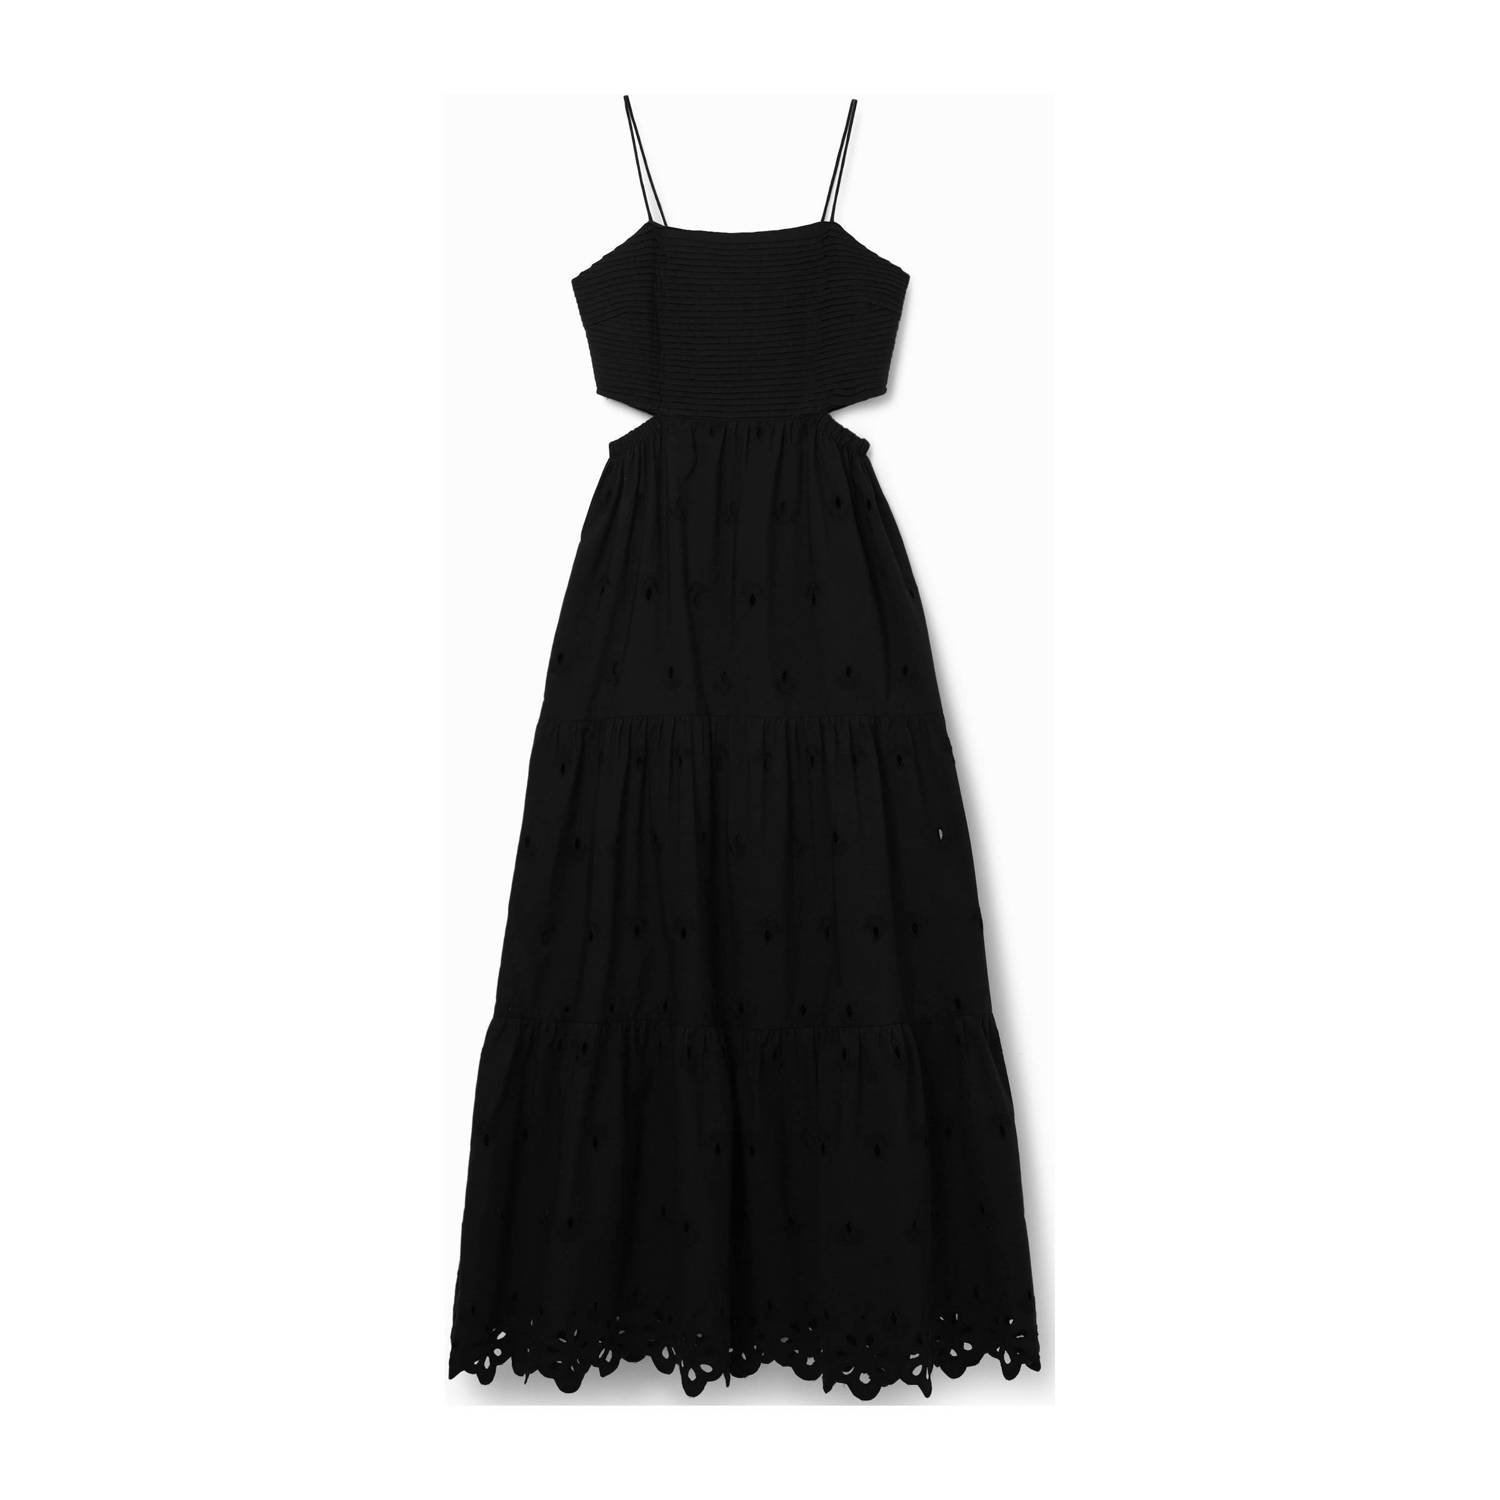 Desigual maxi A-lijn jurk zwart